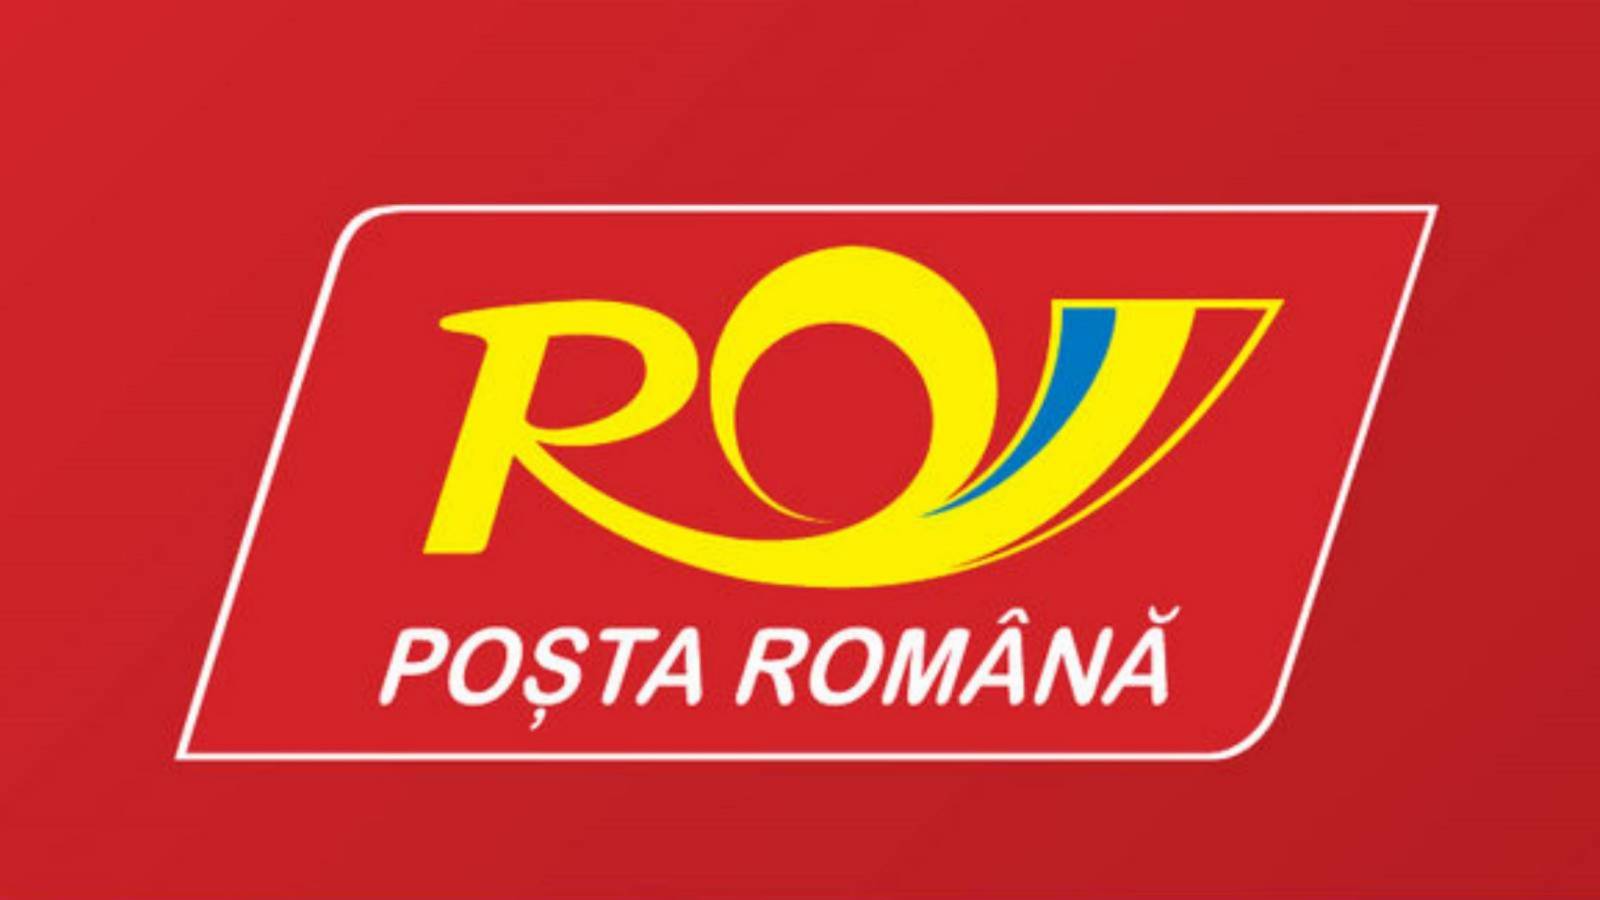 Posta Roemenië verzendstatus Roemenië